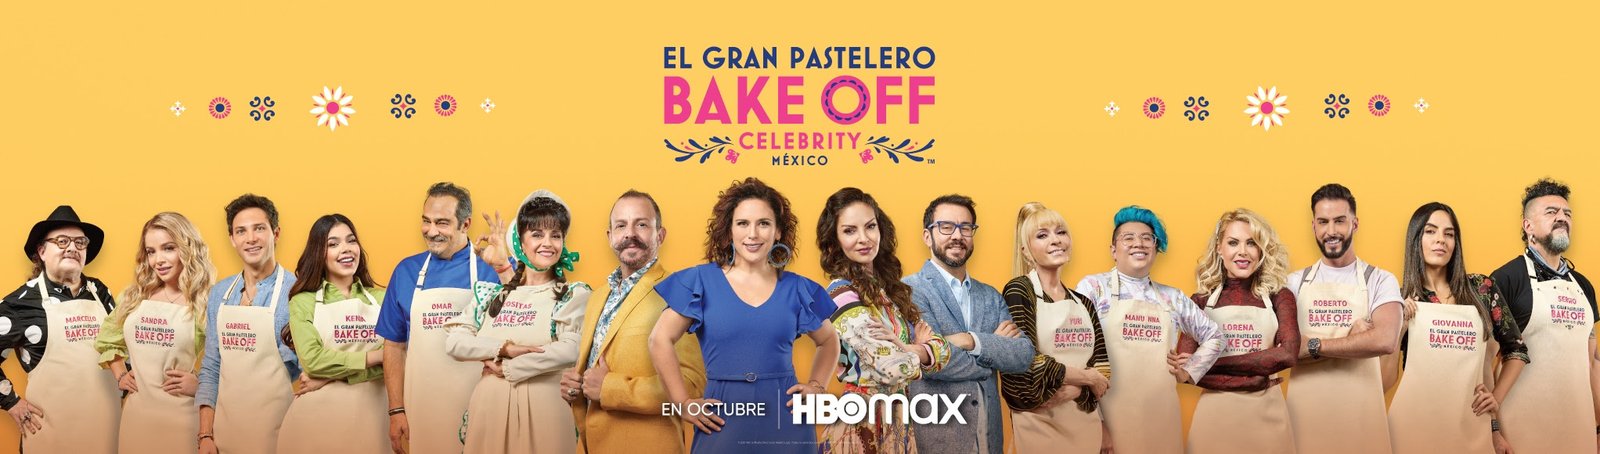 El Gran Pastelero Bake Off Celebrity México HBO